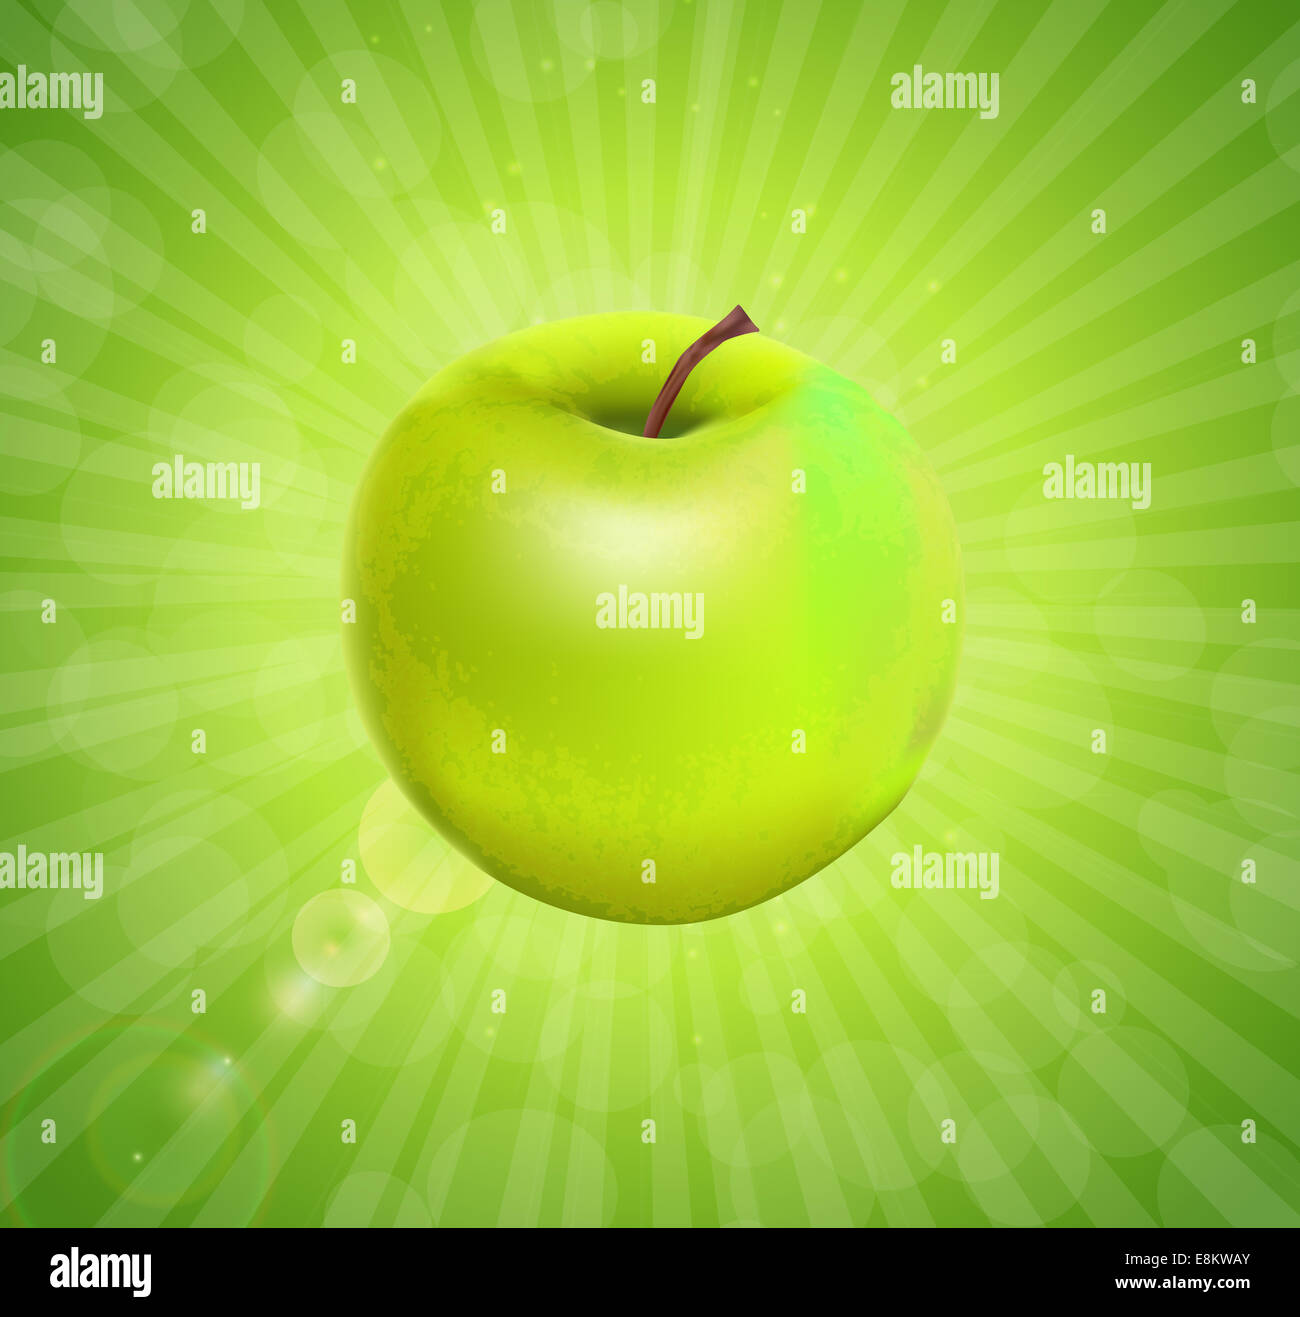 Sweet Tasty Apple. Vector illustration. Stock Photo